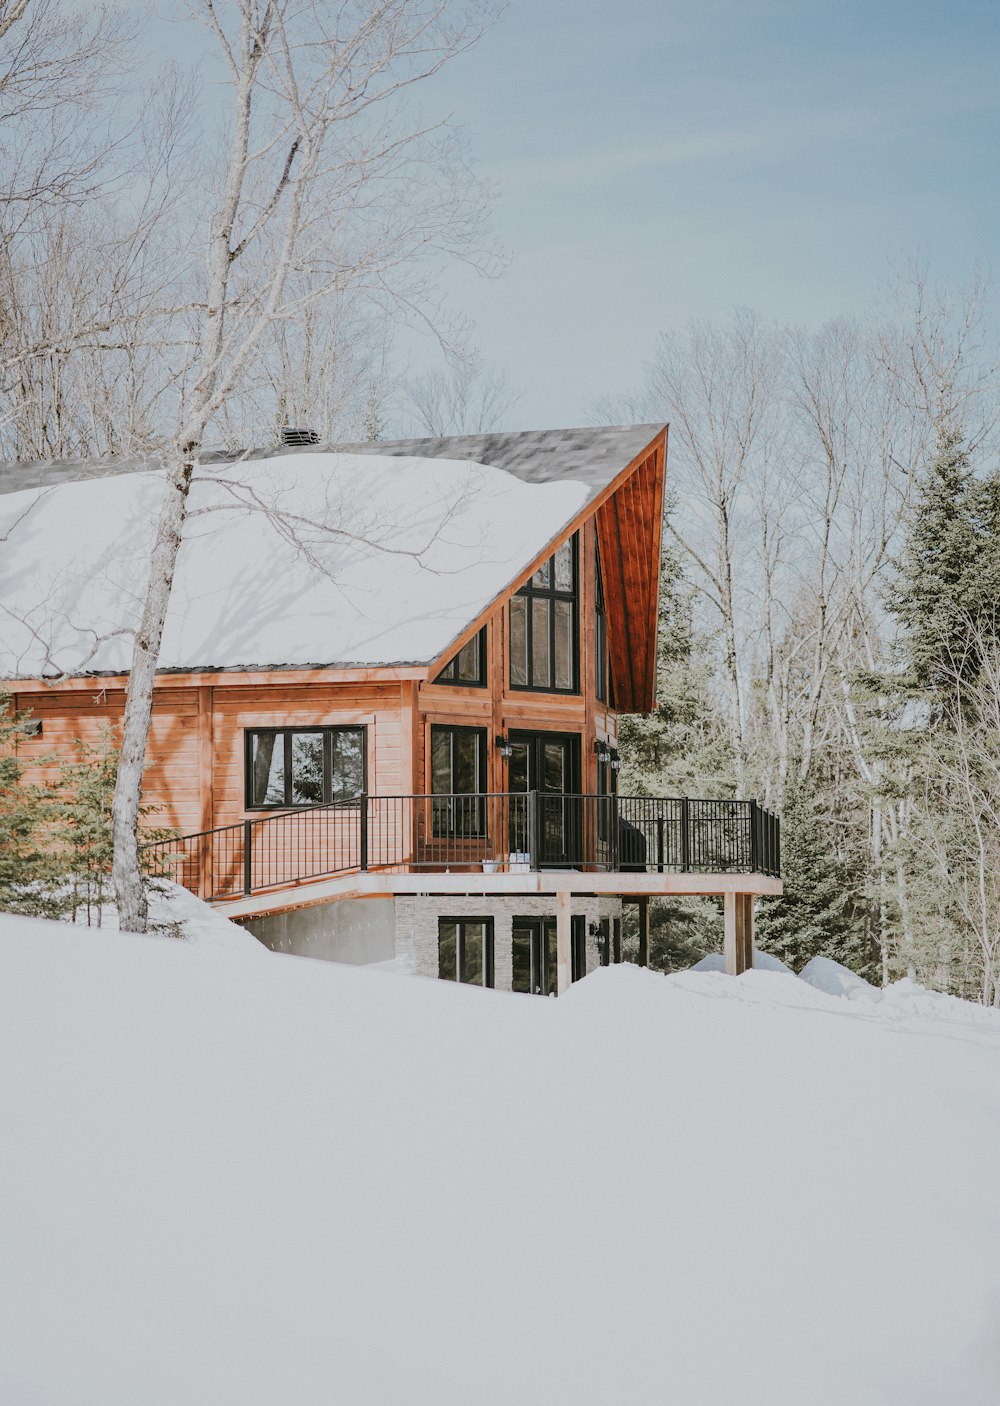 Casa de madeira bege e branca cercada por campo nevado durante o dia